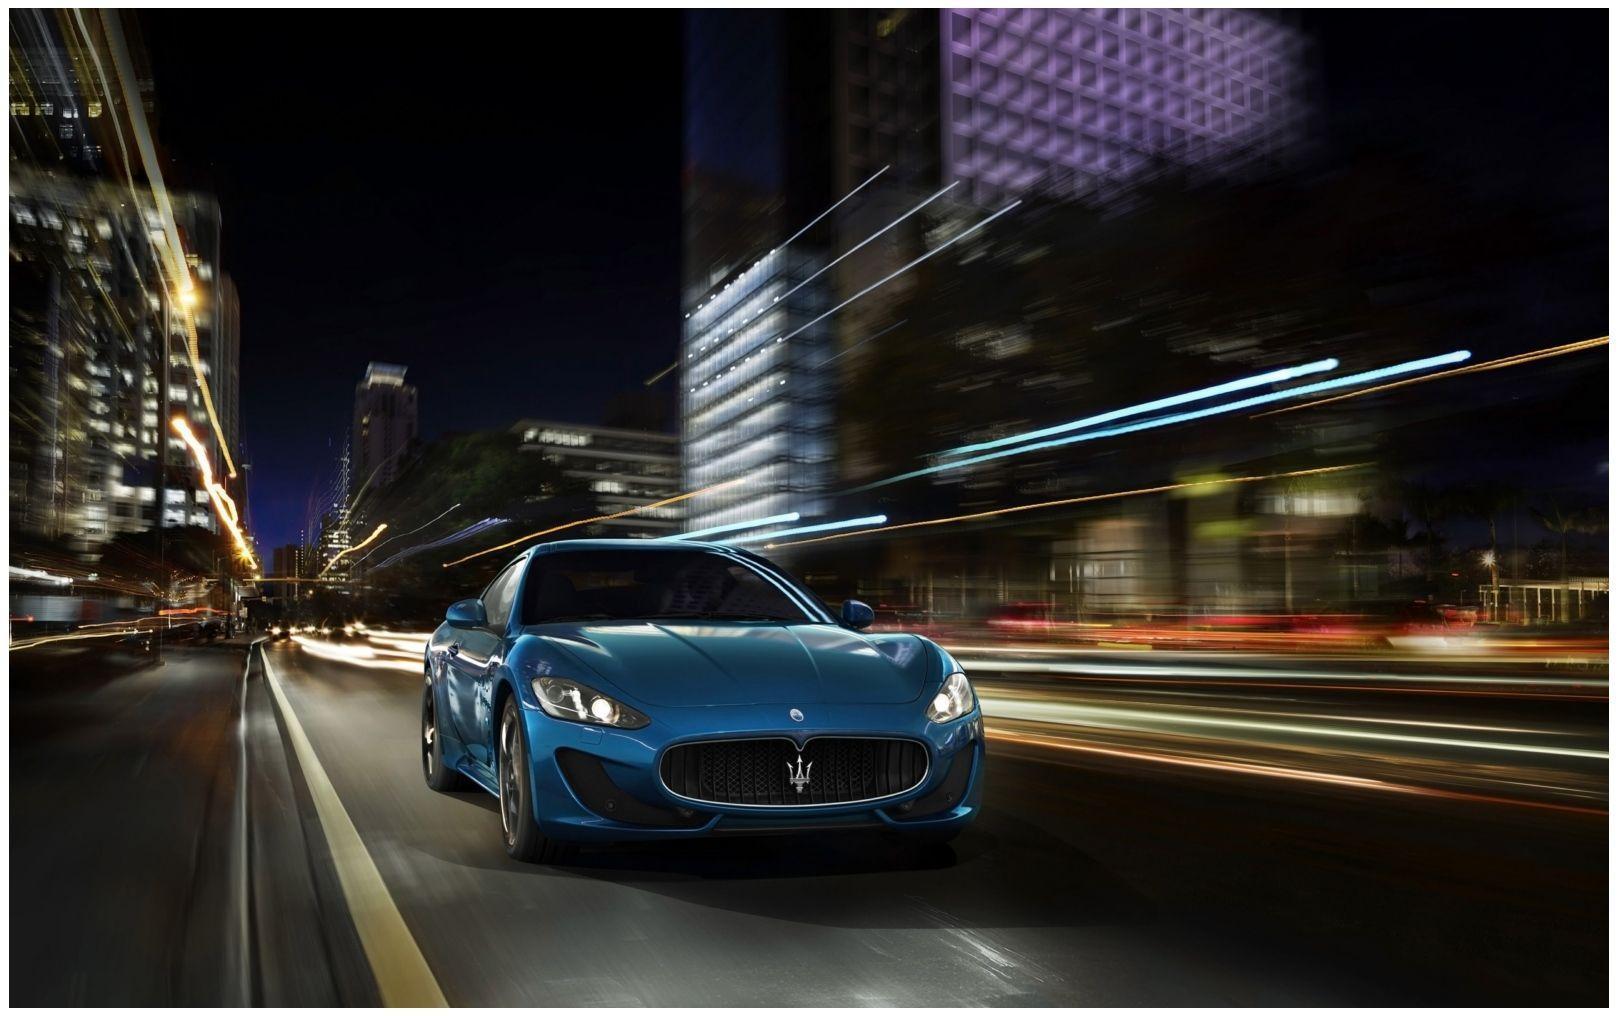 New Maserati Granturismo HD Wallpaper free. Wallpaper